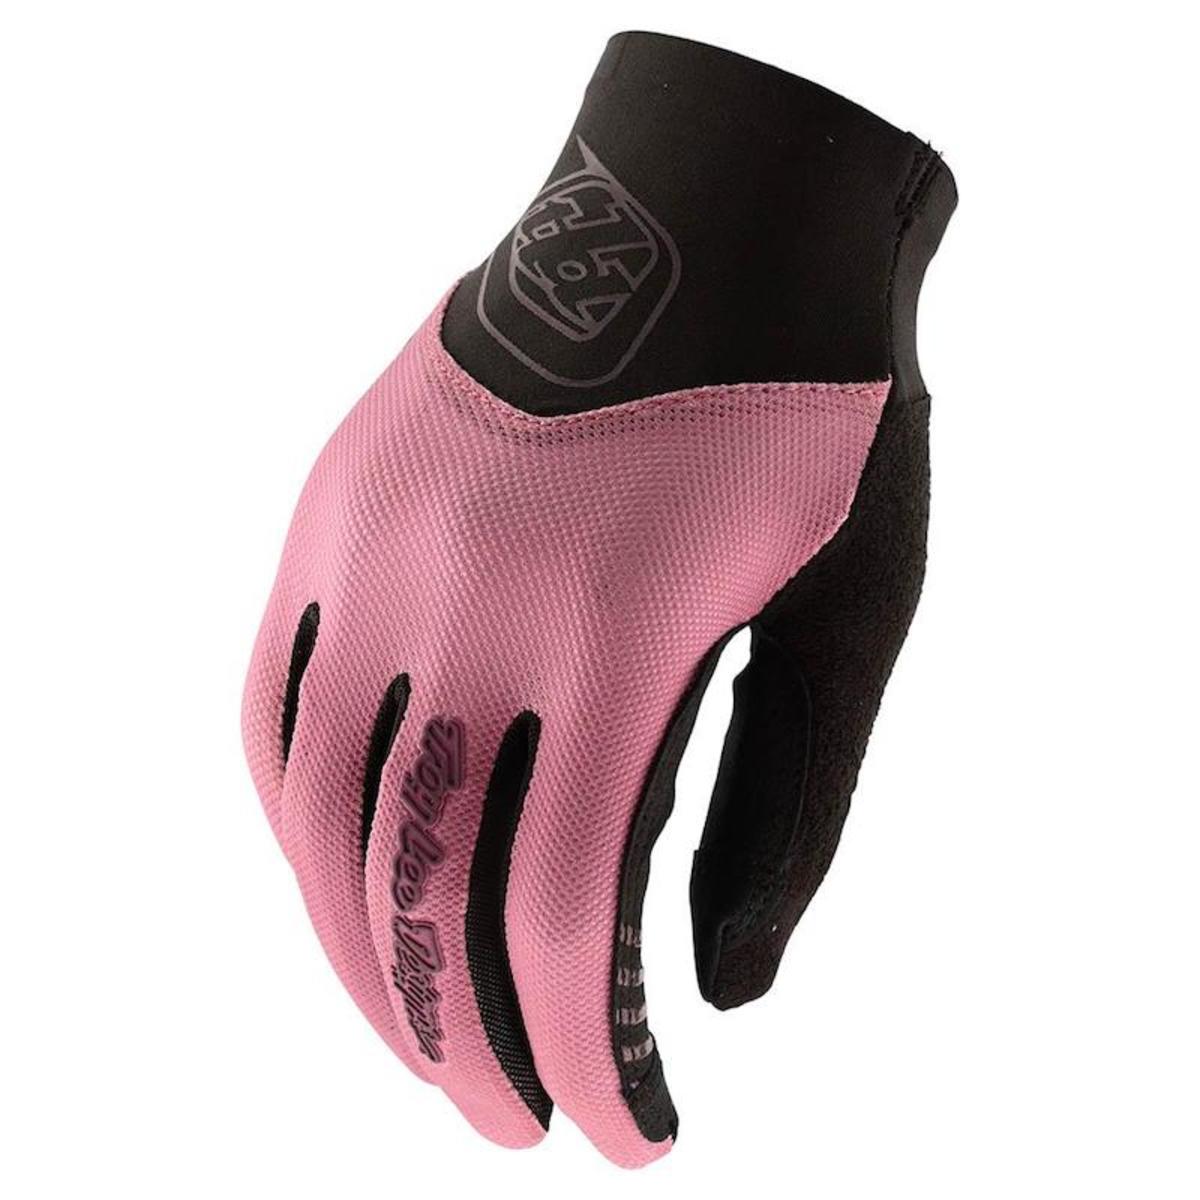 Troy lee designs gloves